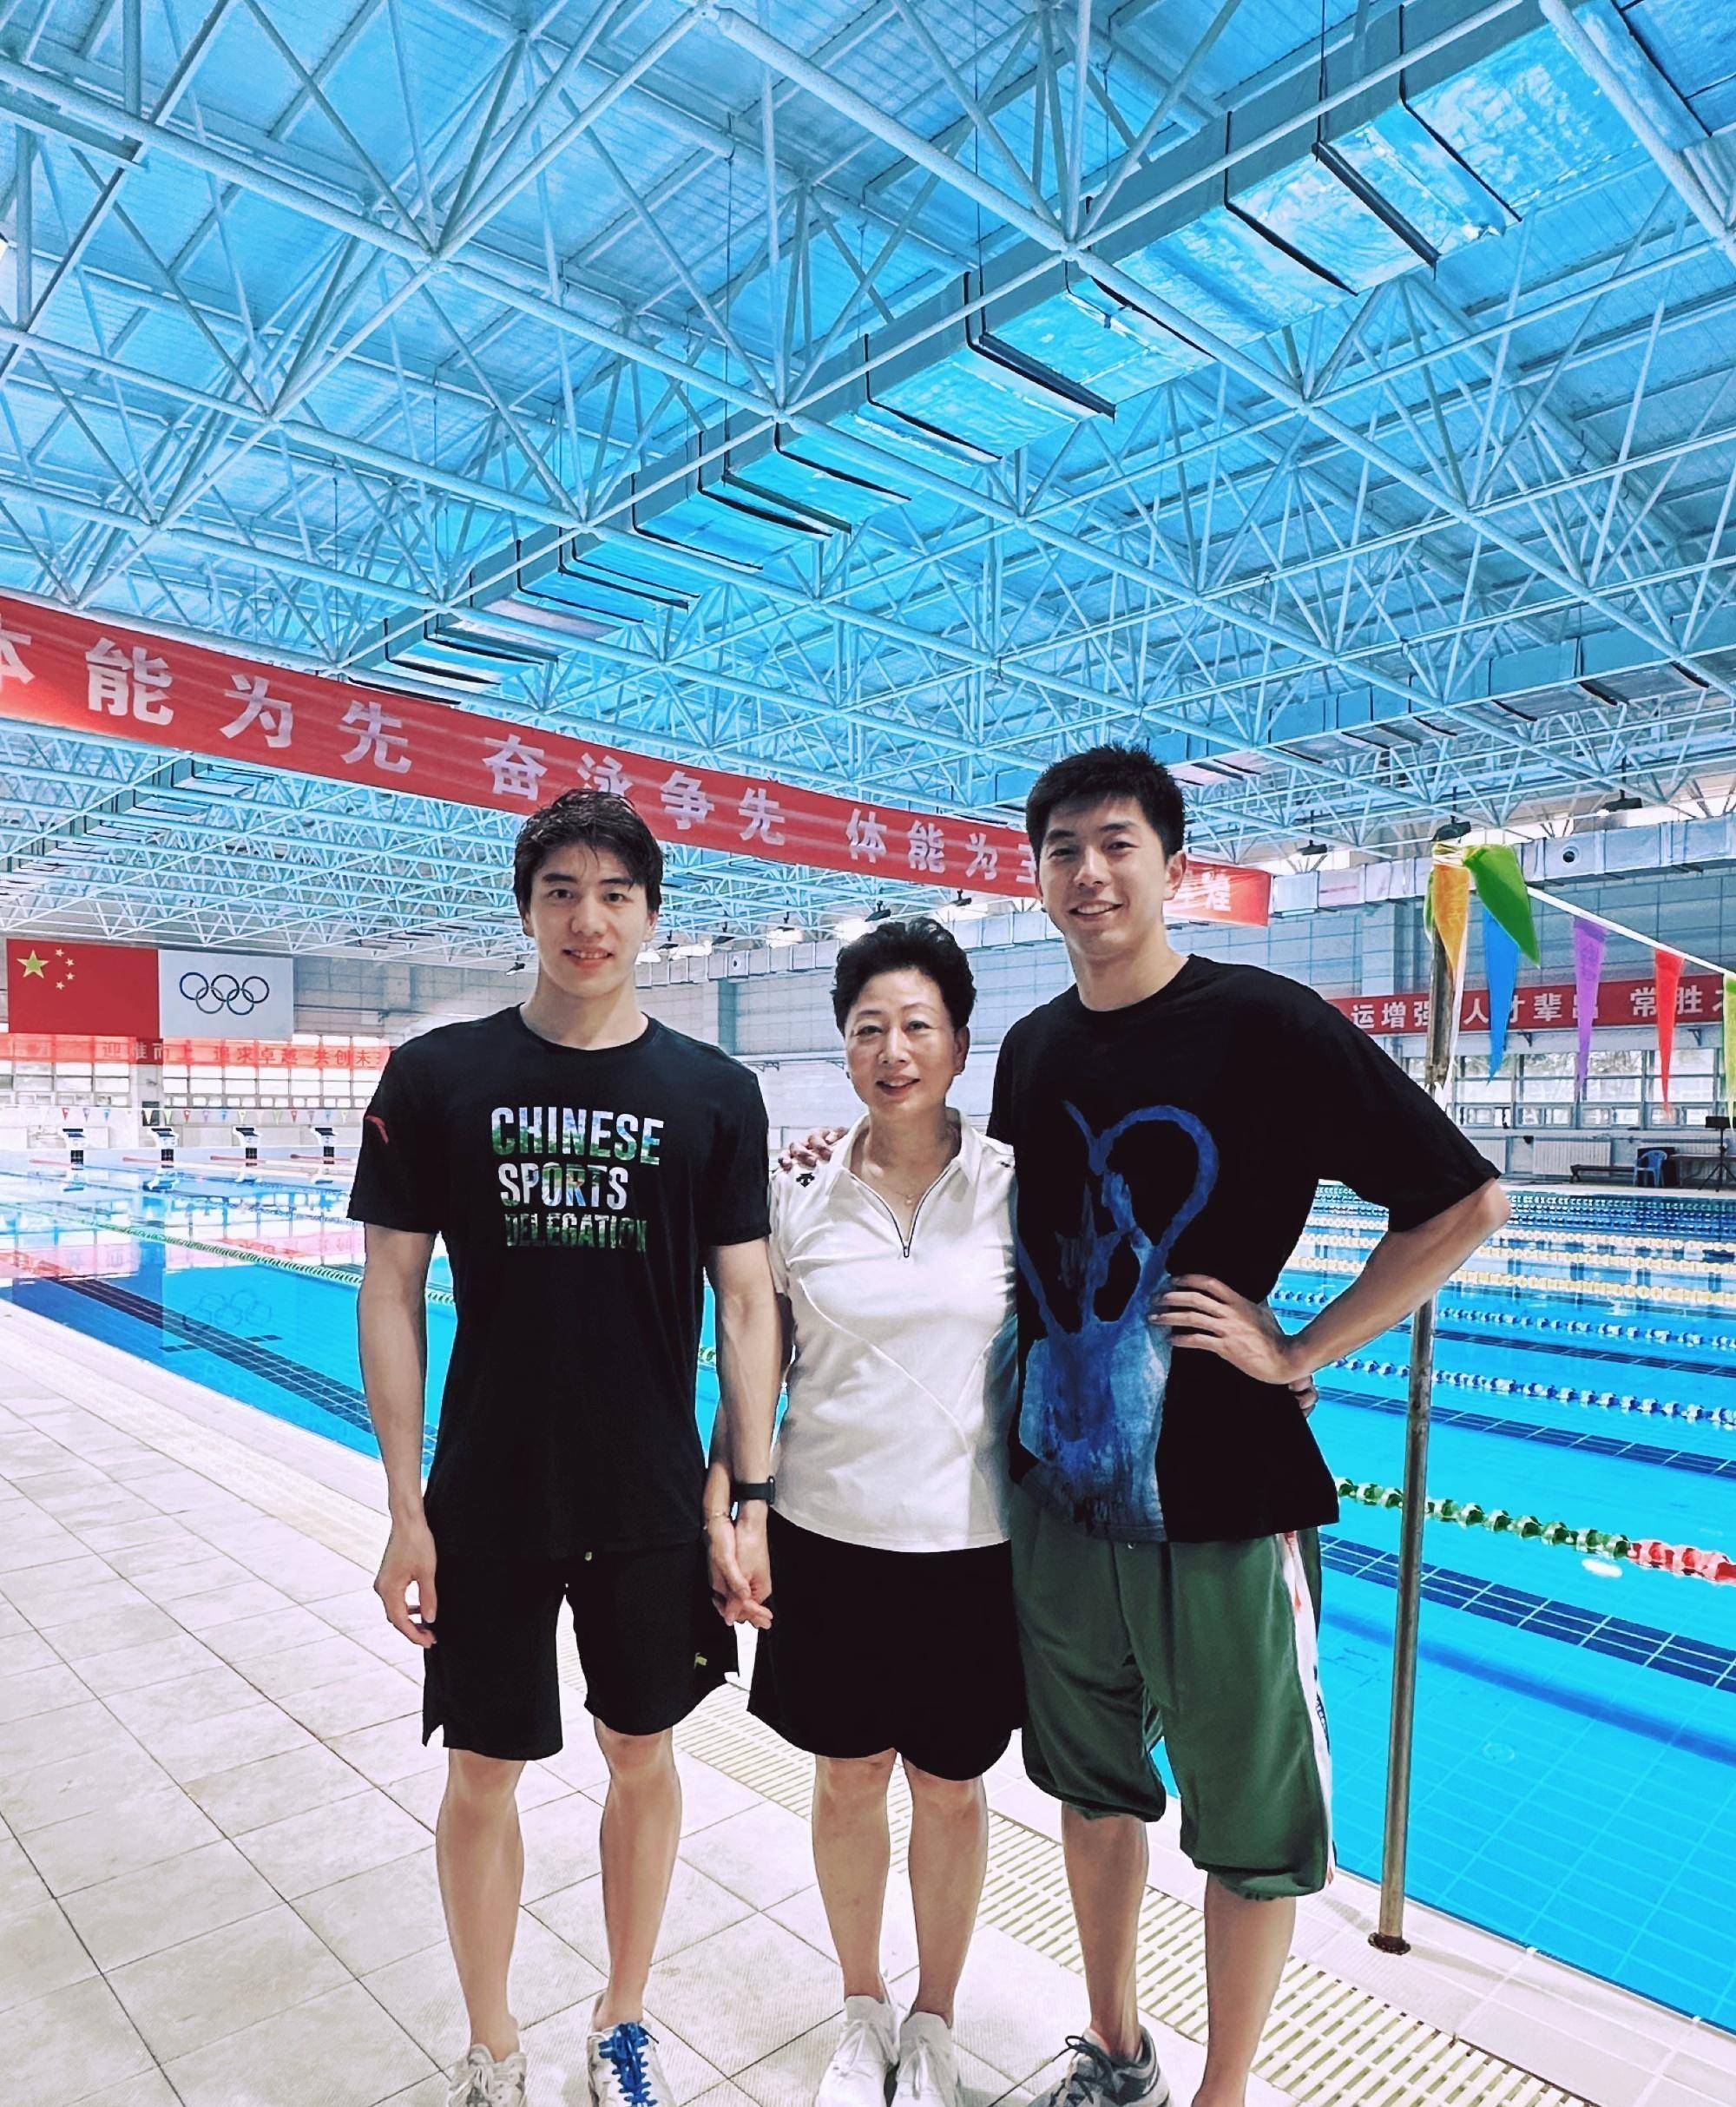 中国游泳队诞生四位新选手世界冠军,其中最小的18岁